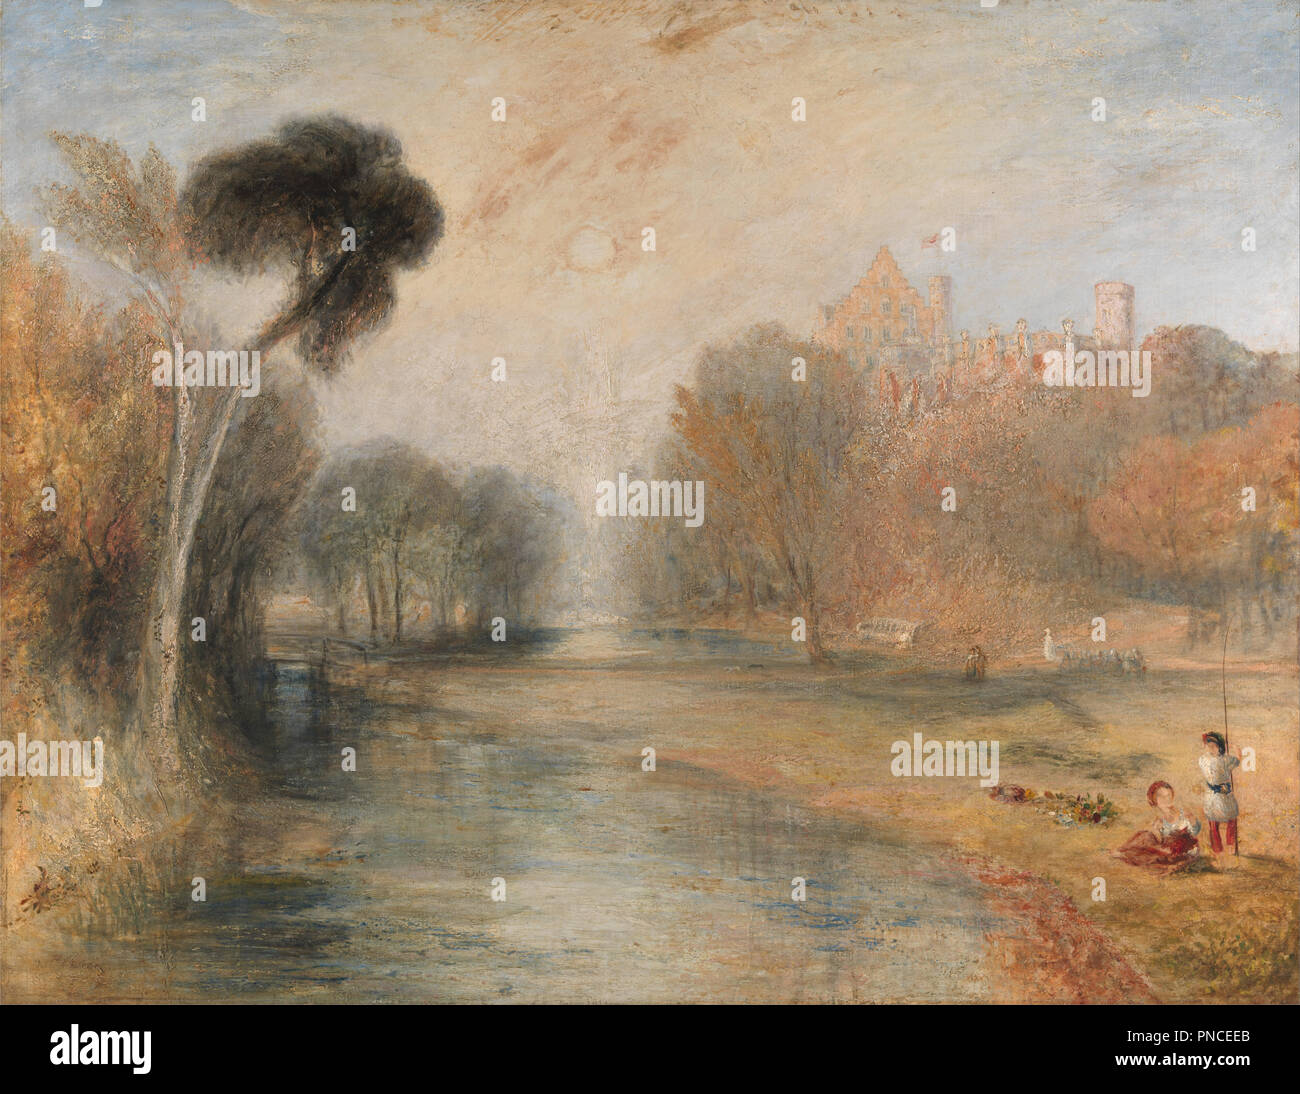 Schloss Rosenau, Coburgo. Fecha/período: De 1841 a 1844. La pintura. Óleo sobre lienzo. Altura: 965 mm (37.99"); ancho: 1.245 mm (49.01). Autor: J. M. W. Turner. Foto de stock